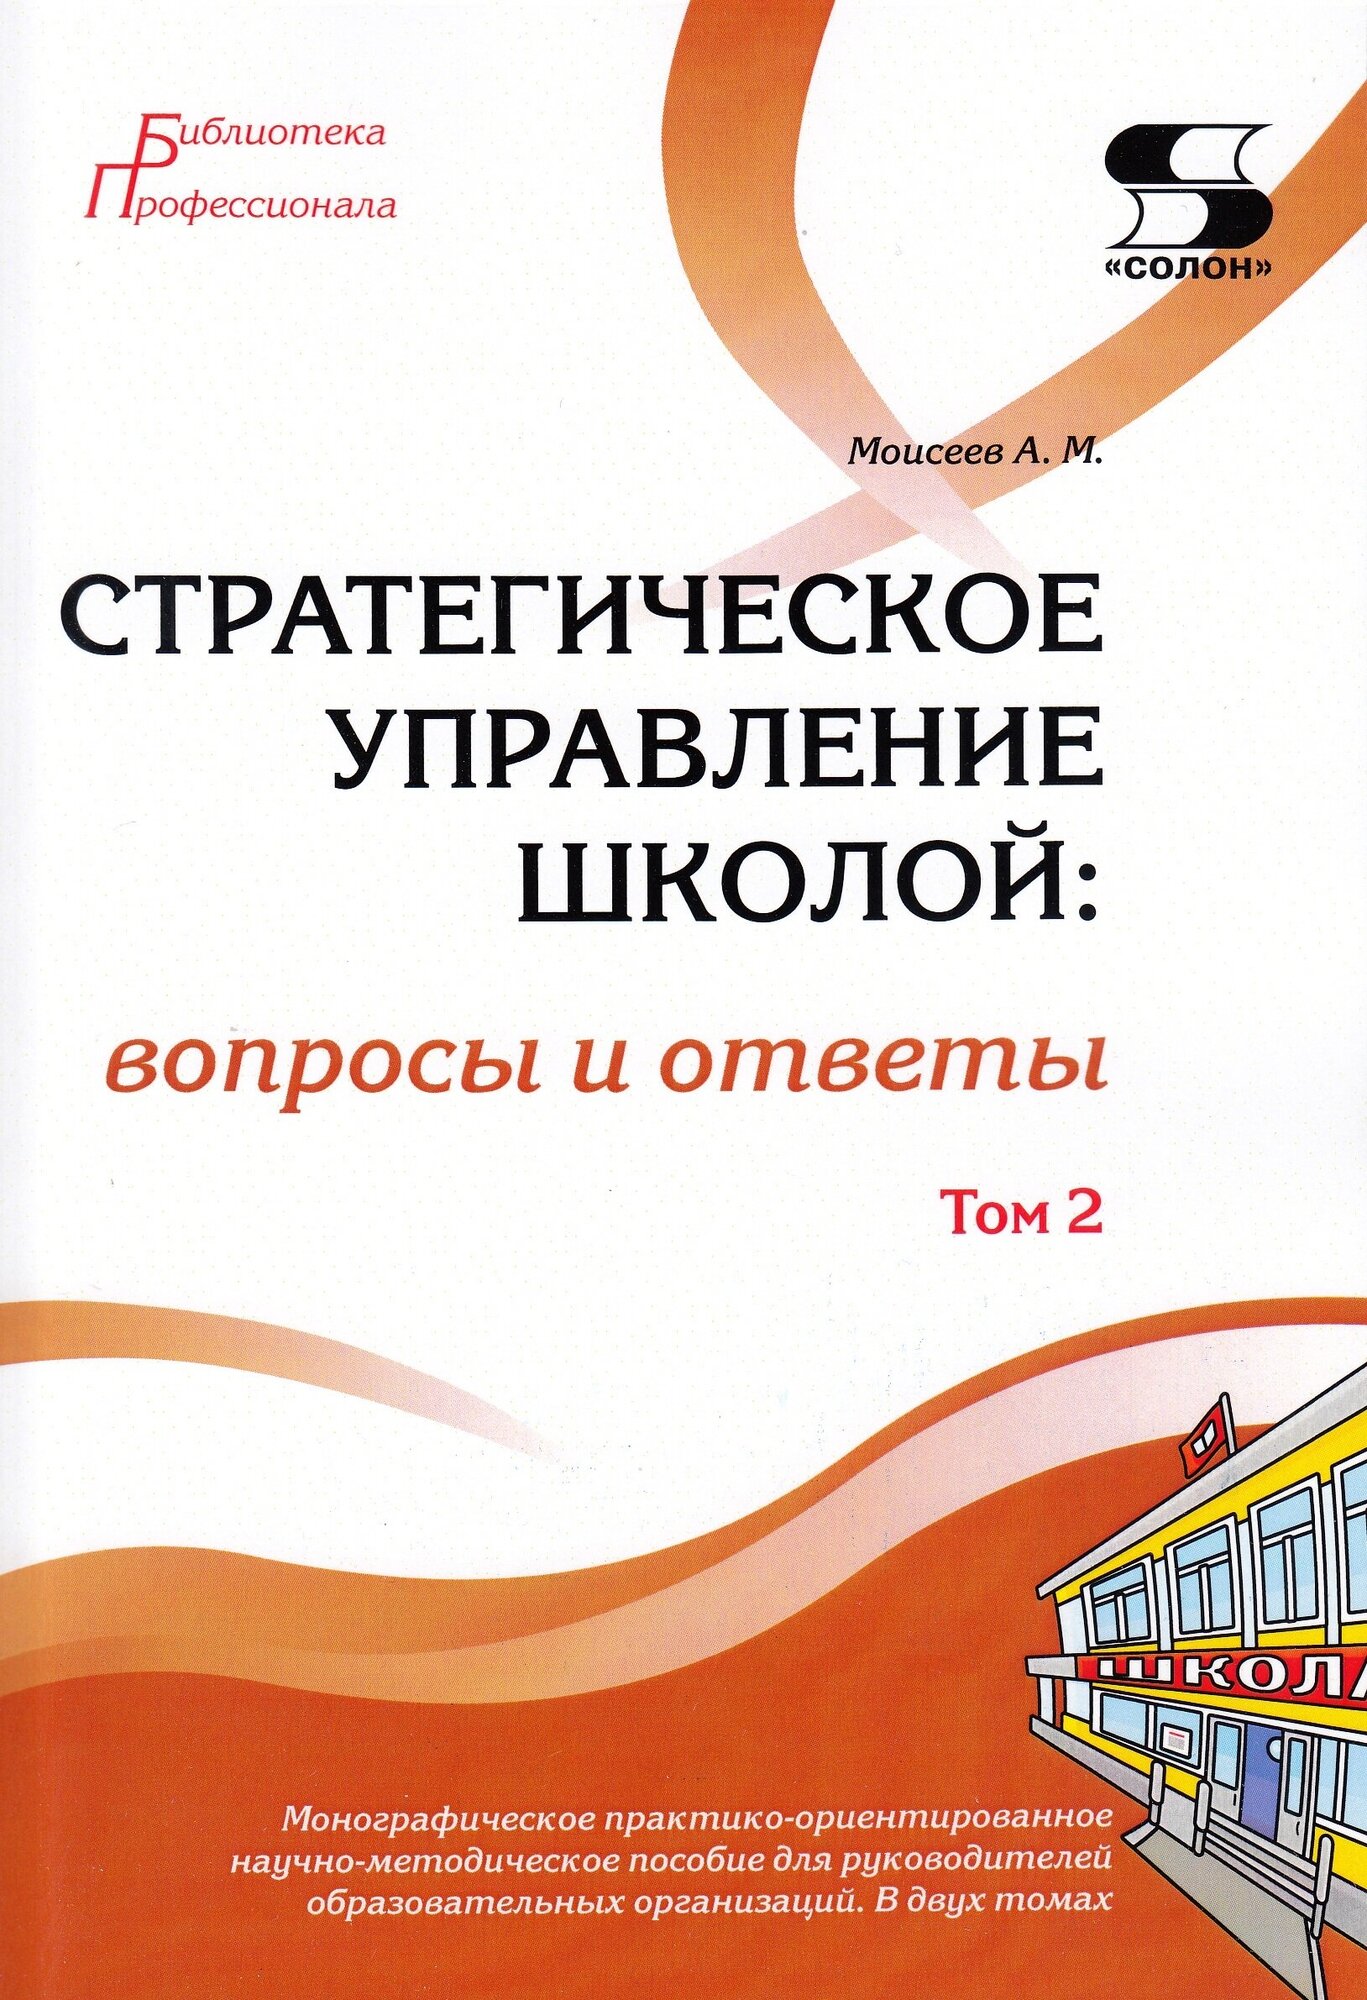 Стратегическое управление школой: вопросы и ответы Том 2, Моисеев А.